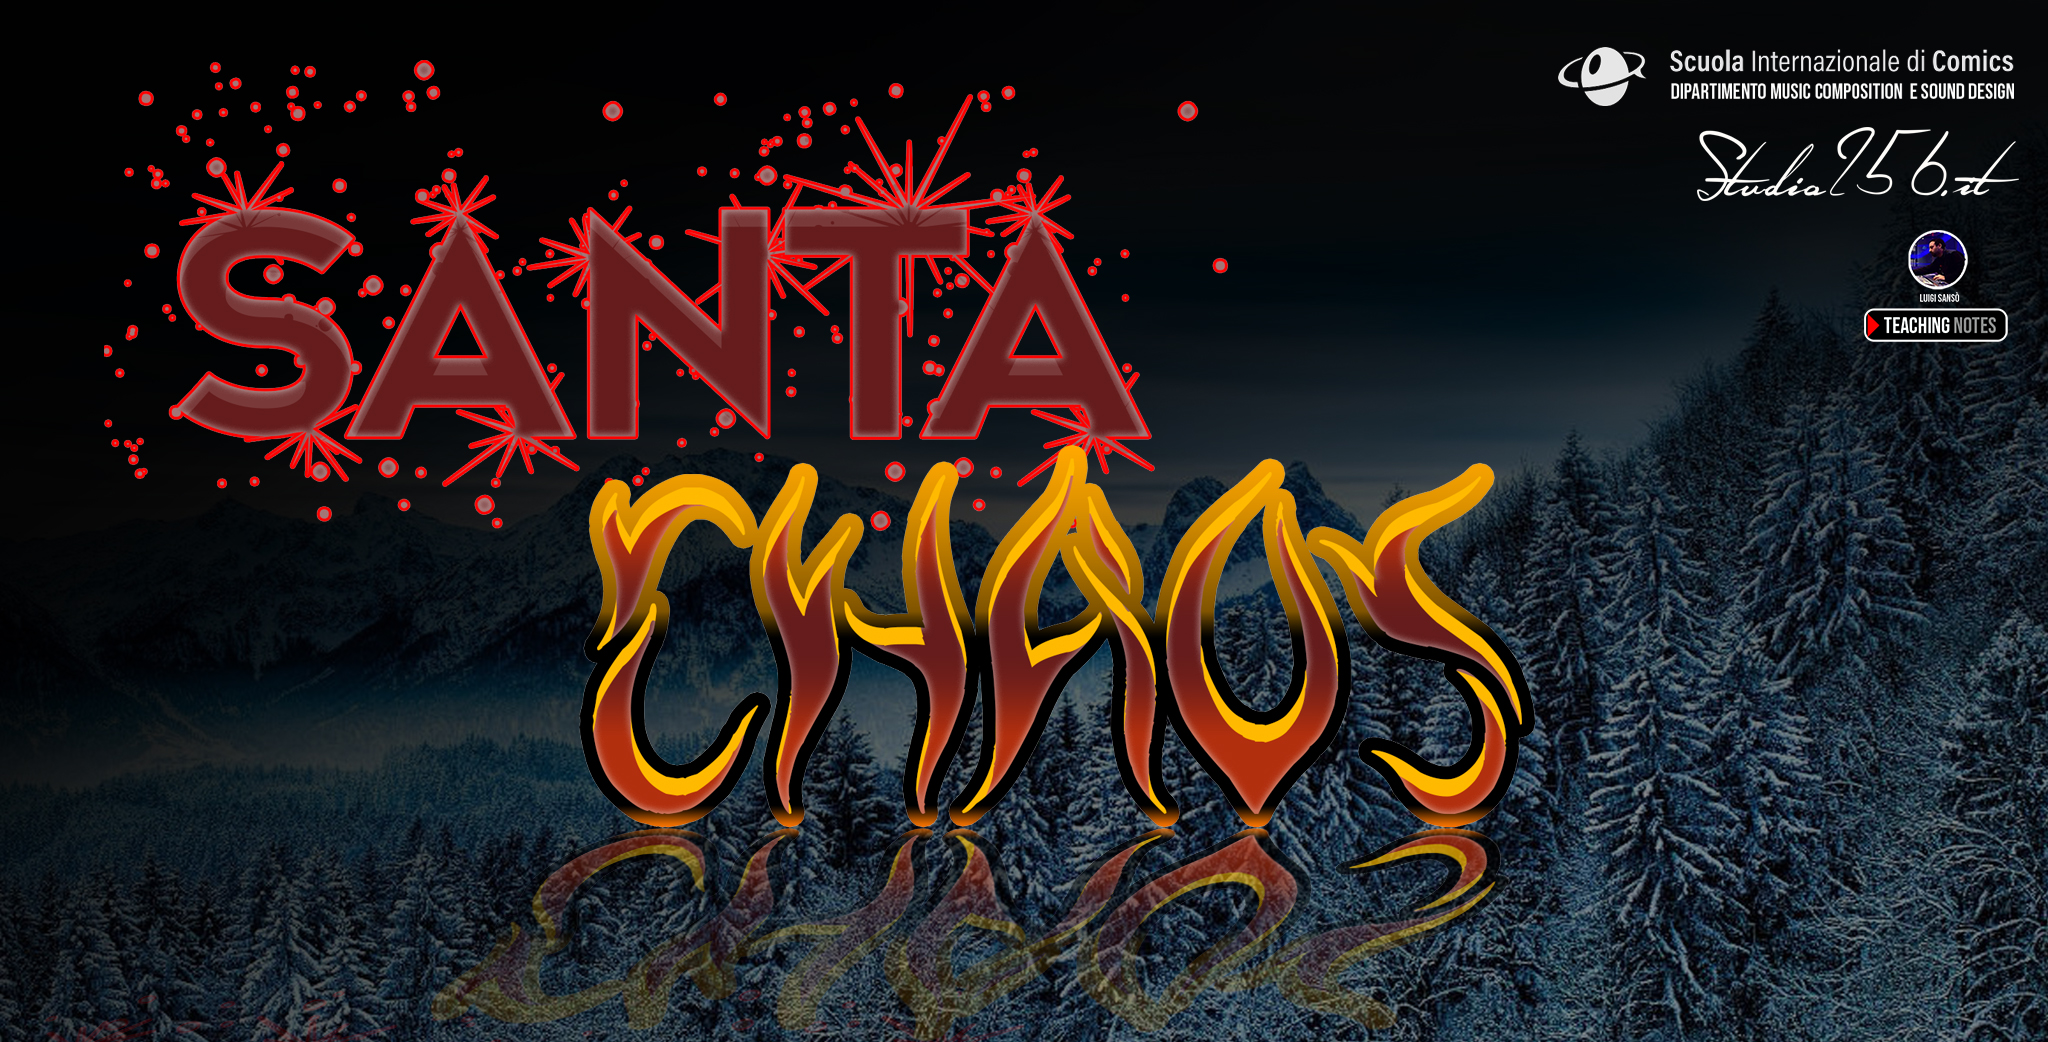 Santa Chaos